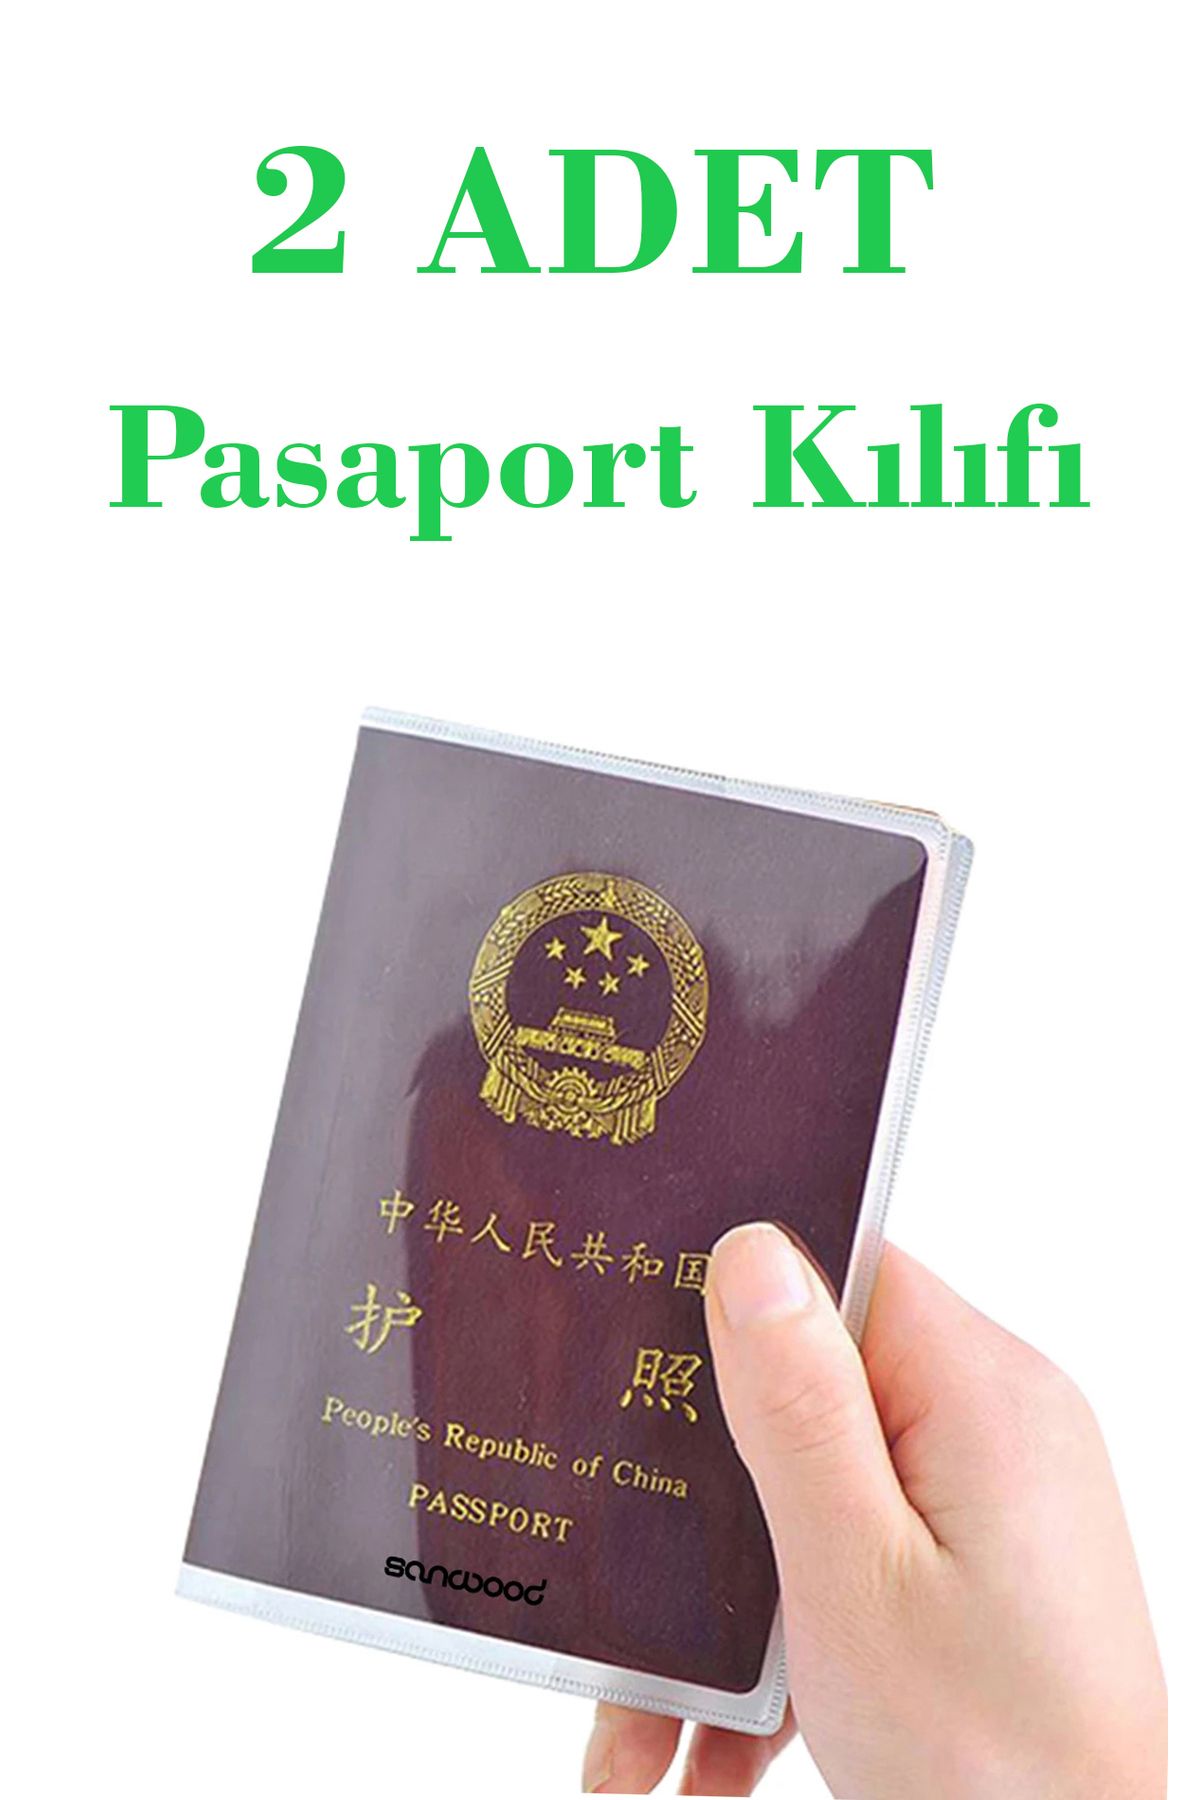 İPAX 2 Adet Şeffaf Pasaport Kılıfı Pasaport Koruma Kabı Pasaport Cüzdanı Pasaportluk Her Pasaporta Uygun